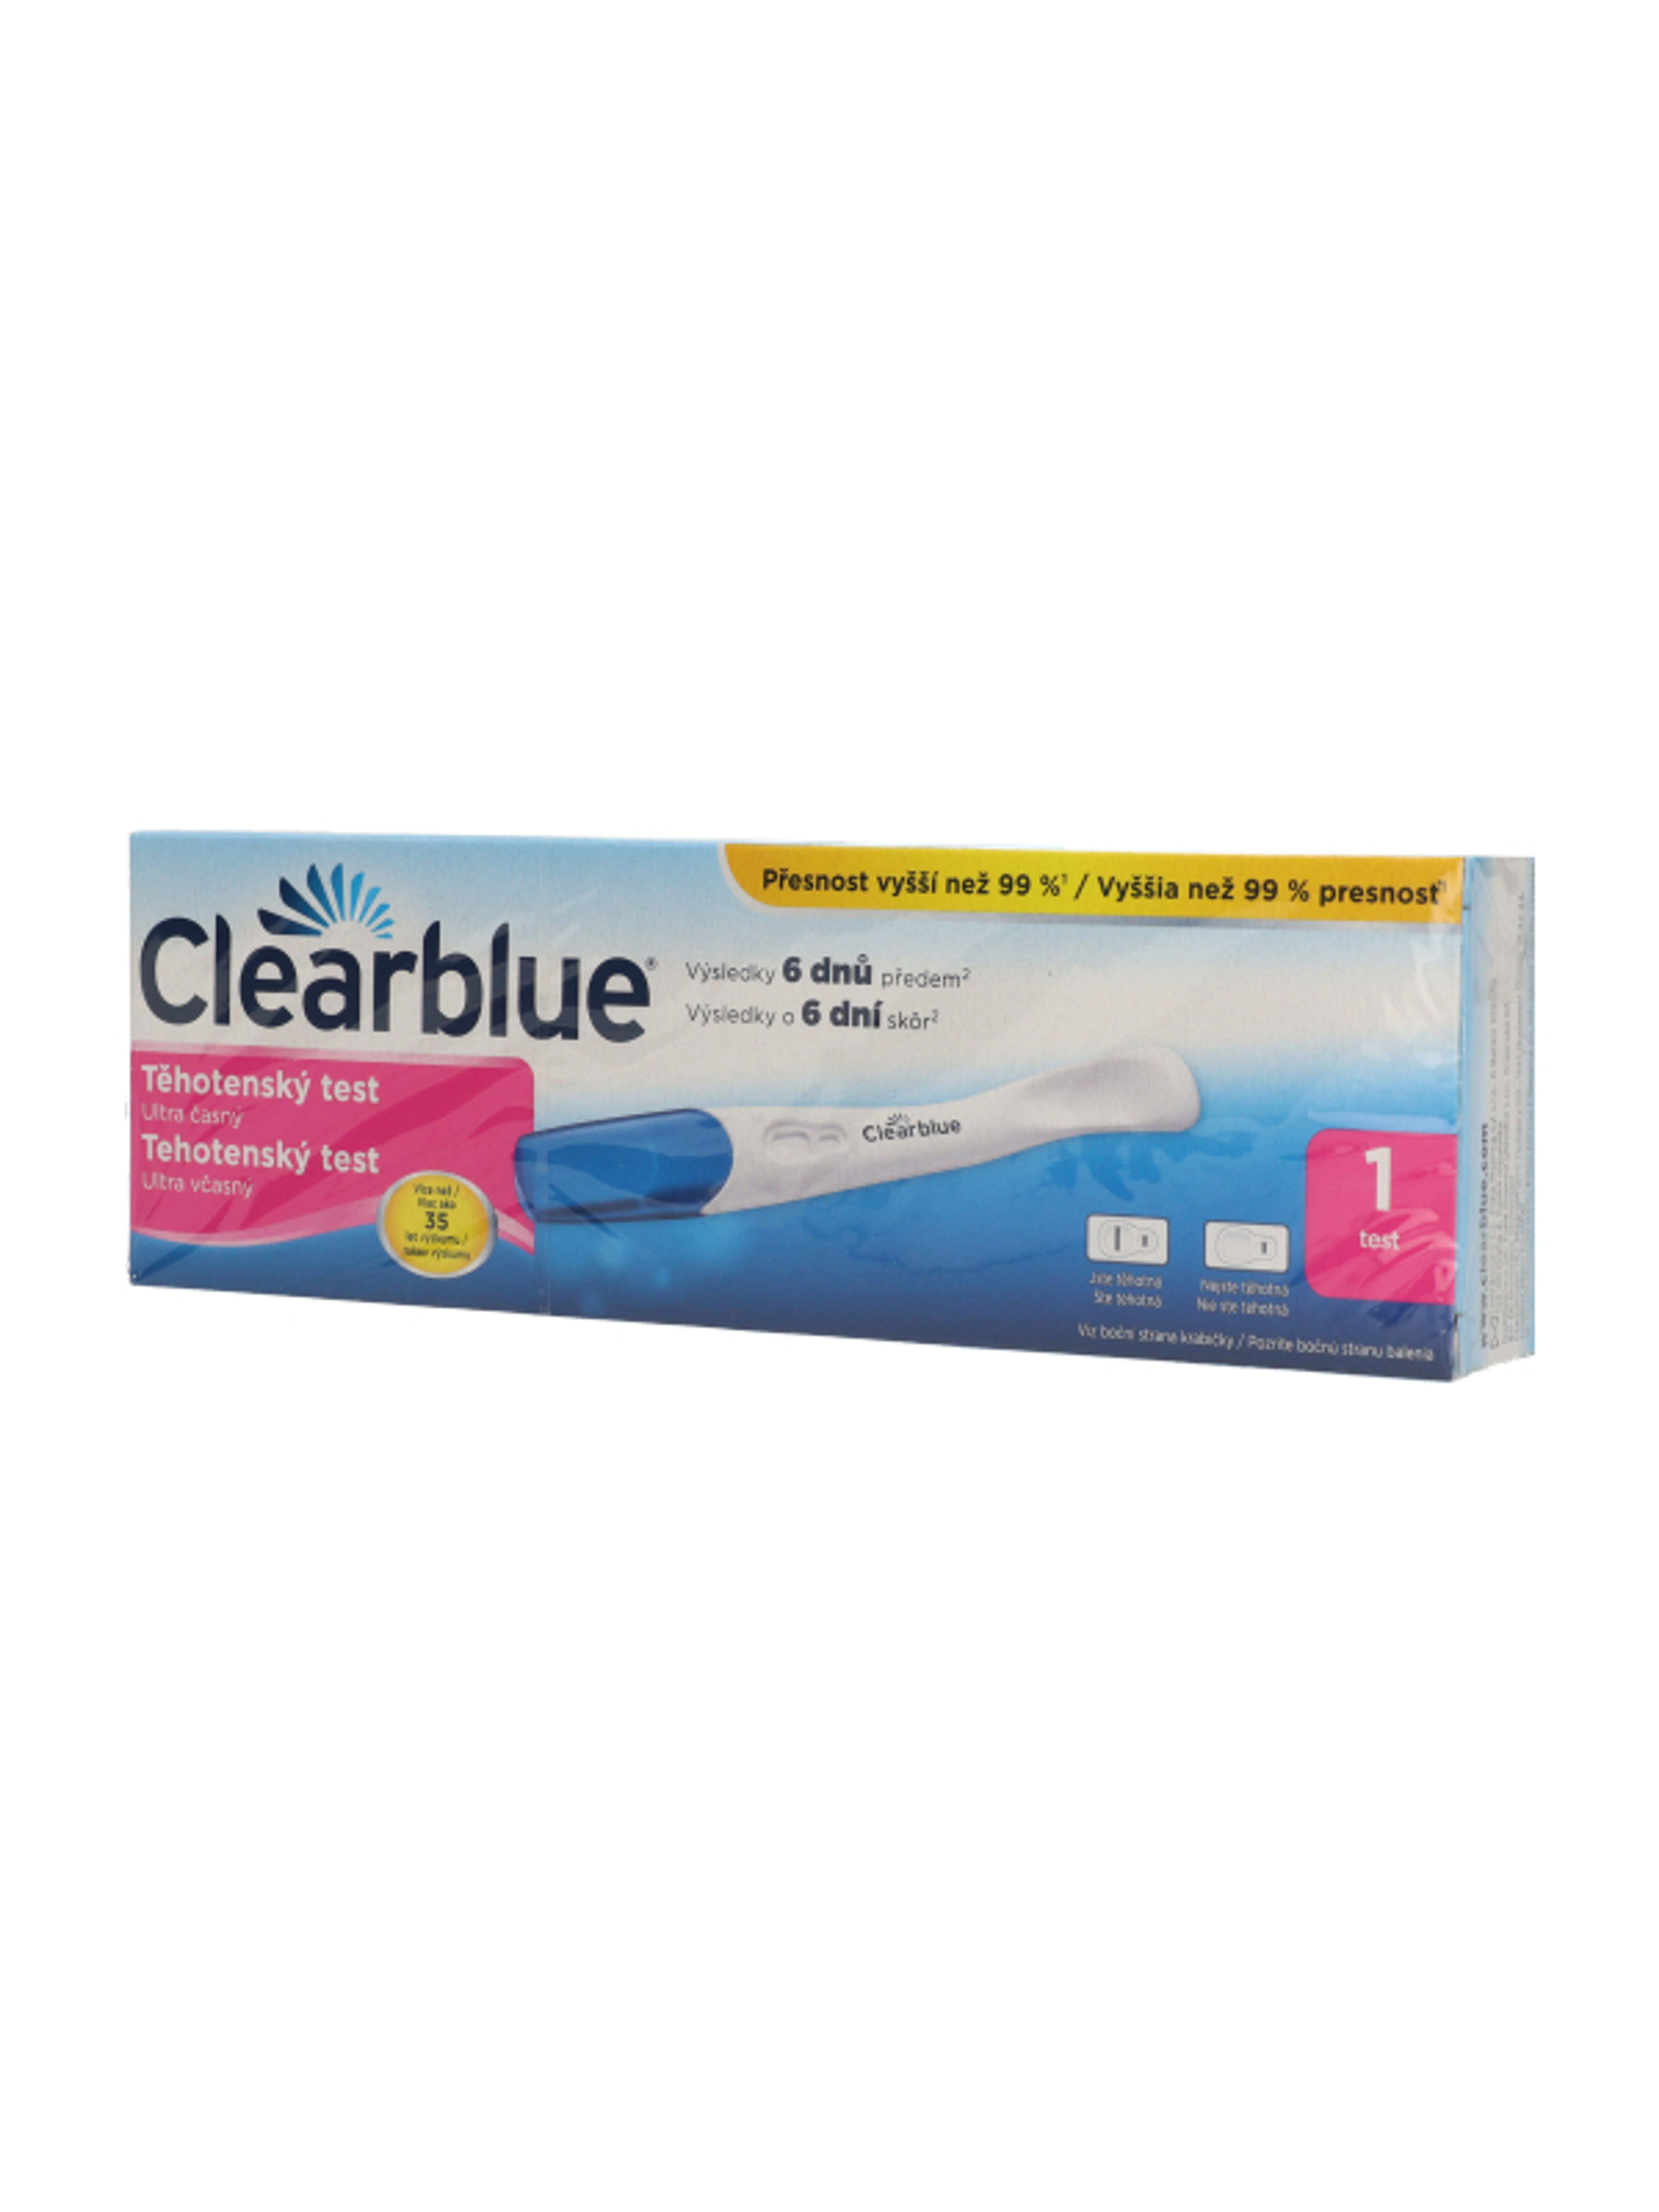 Clearblue rendkívül korai terhességi teszt - 1 db-3